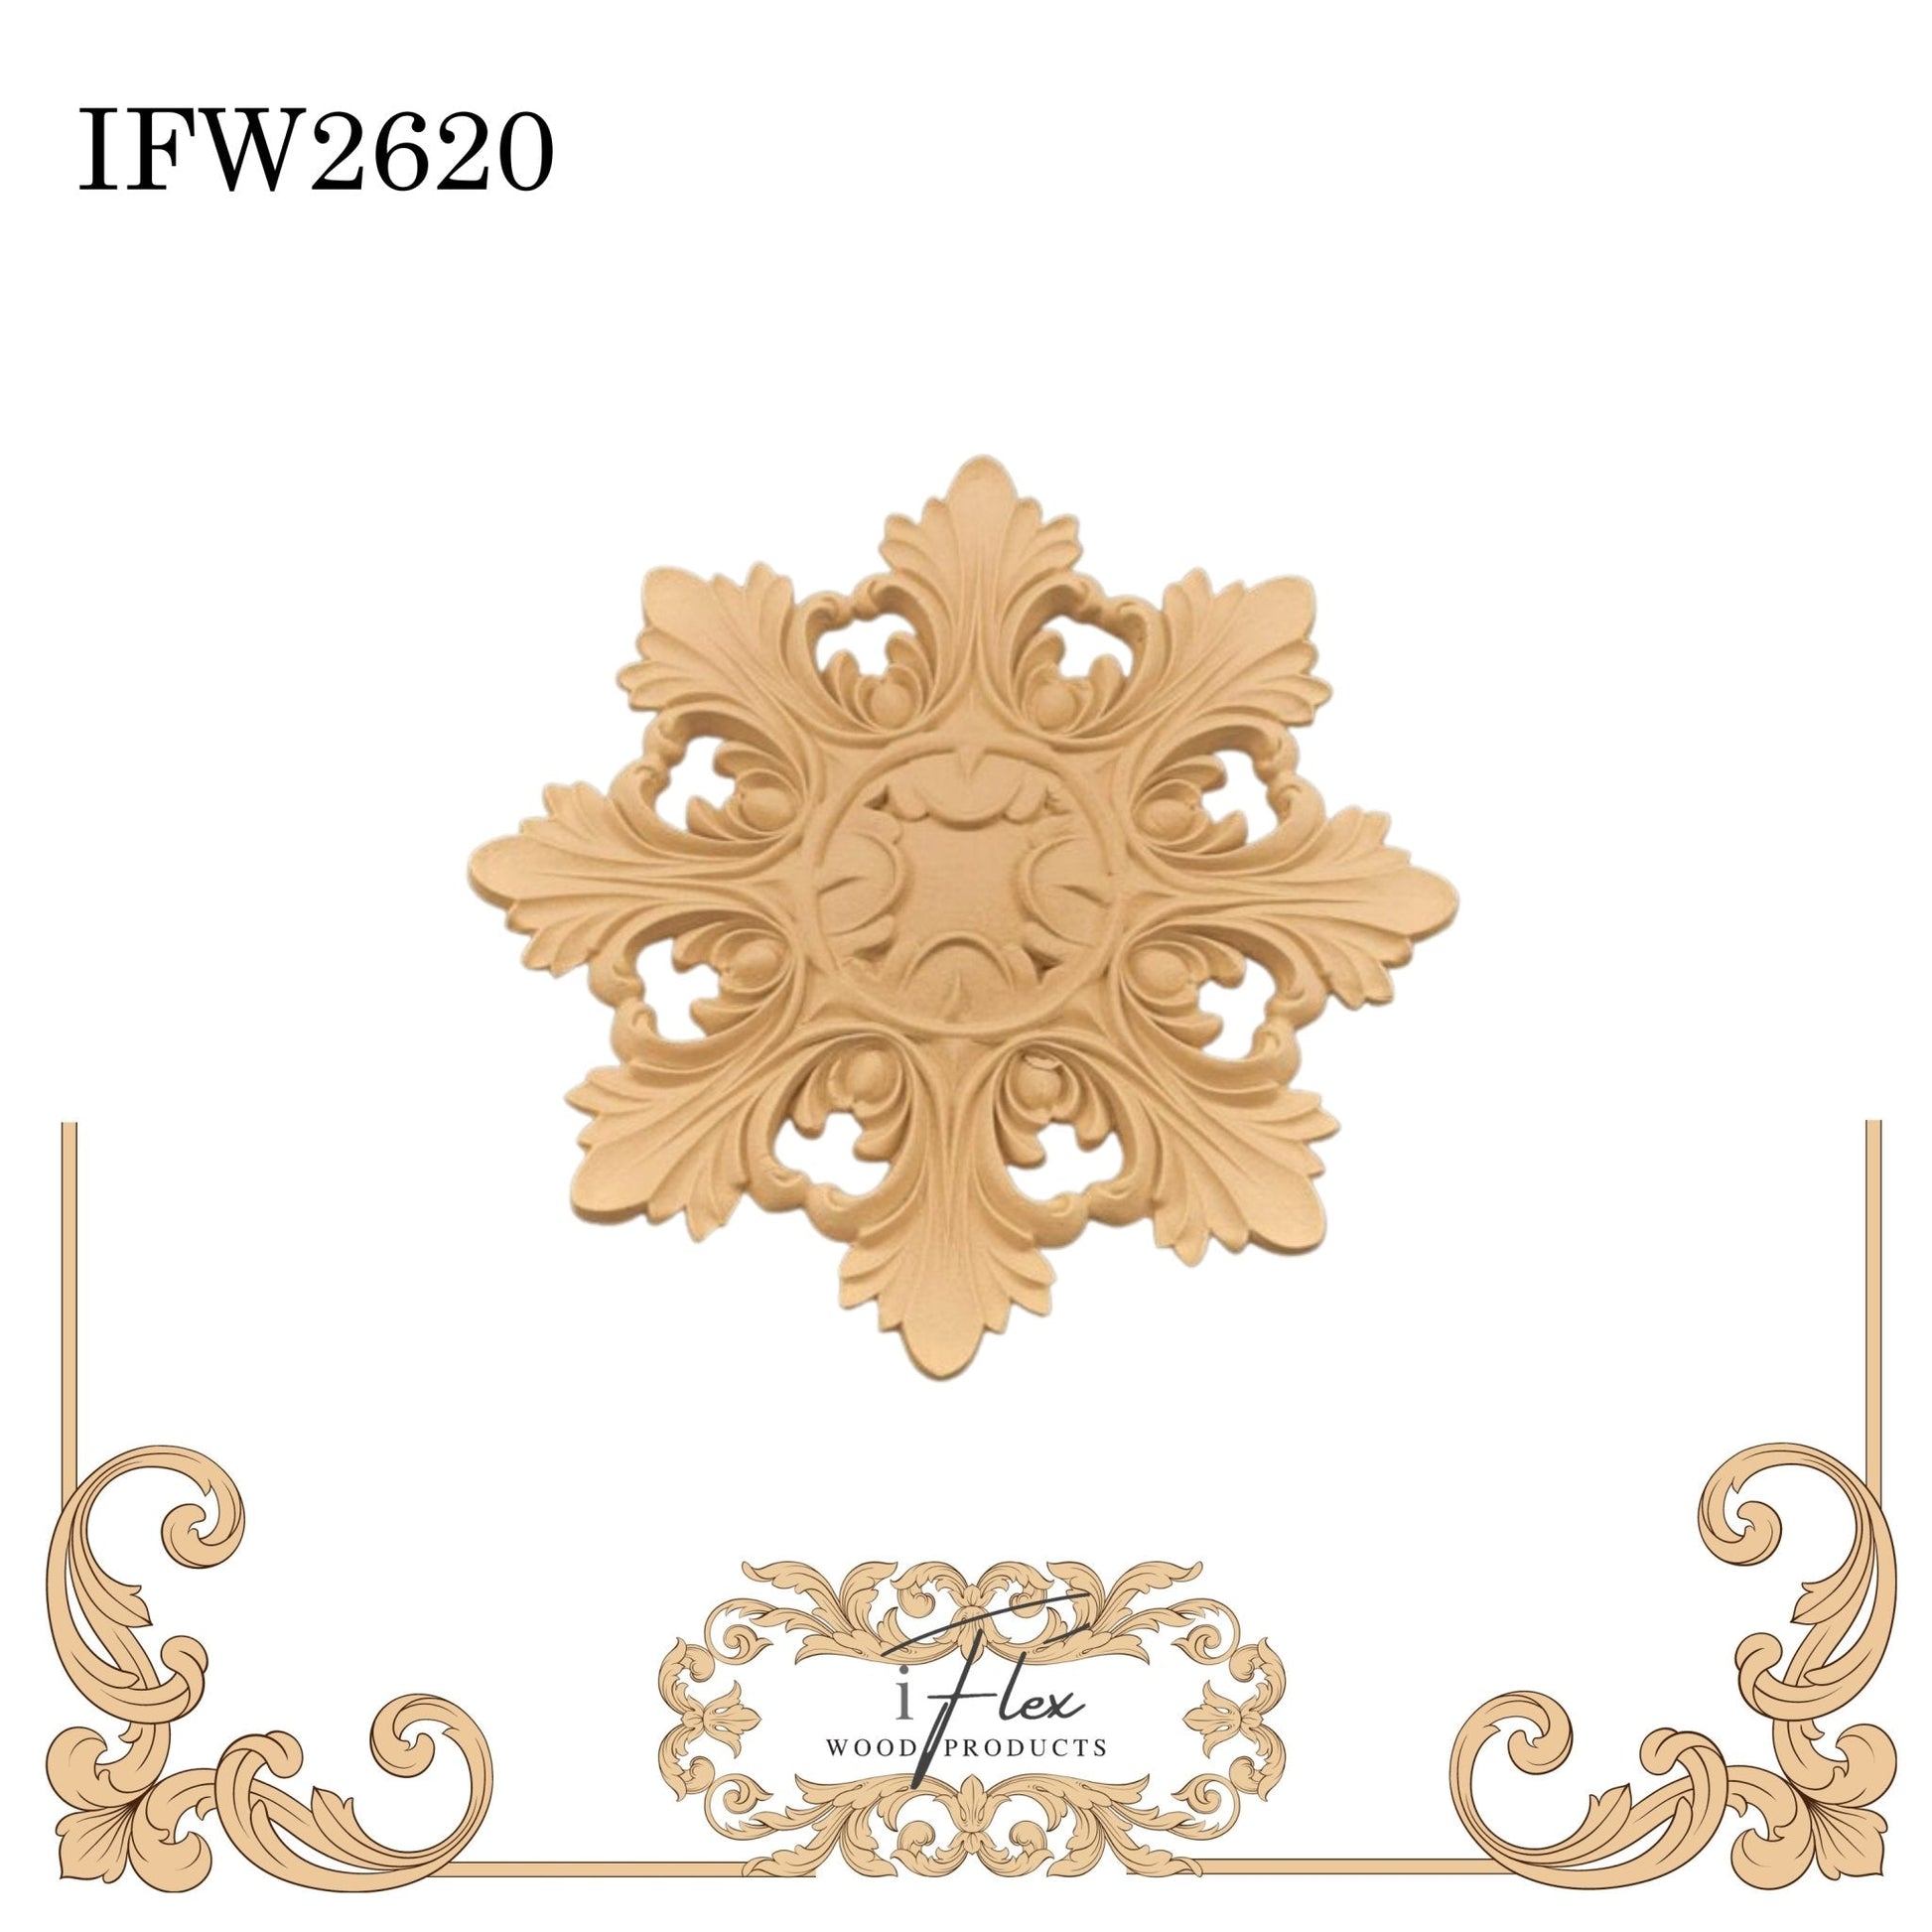 IFW 2620